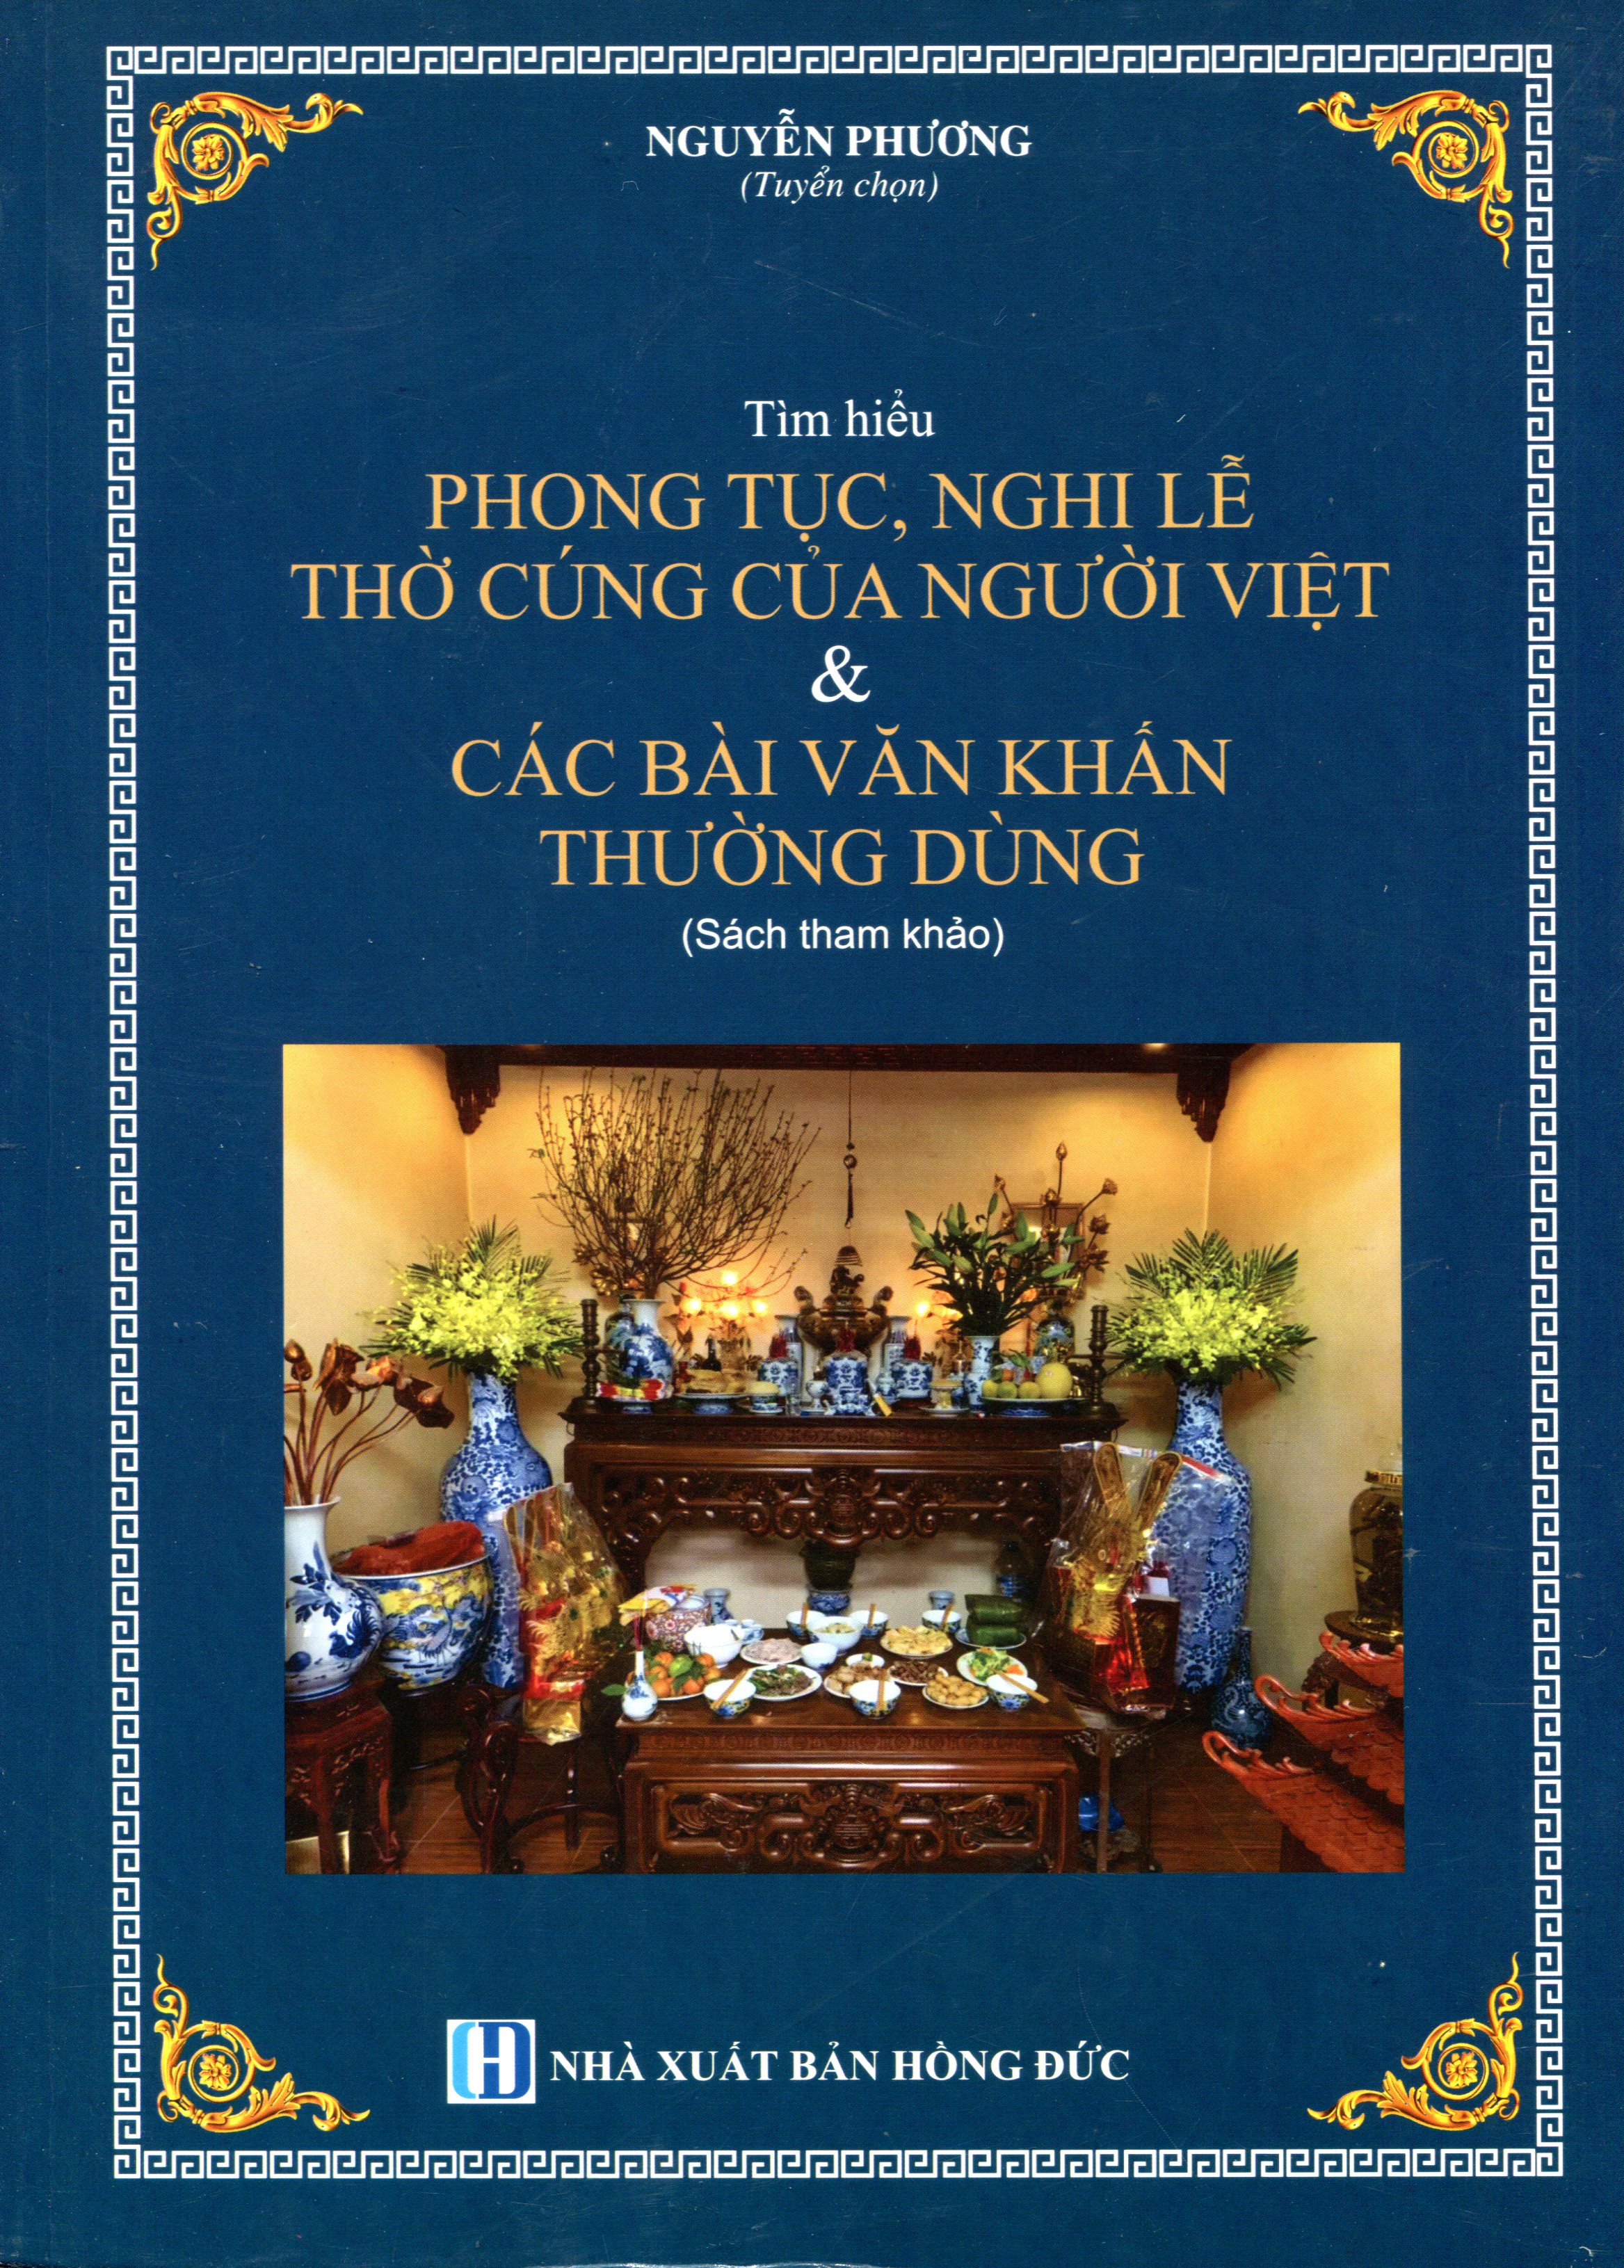 Tìm Hiểu Phong Tục, Nghi Lễ Thờ Cúng Của Người Việt & Các Bài Văn Khấn Thường Dùng